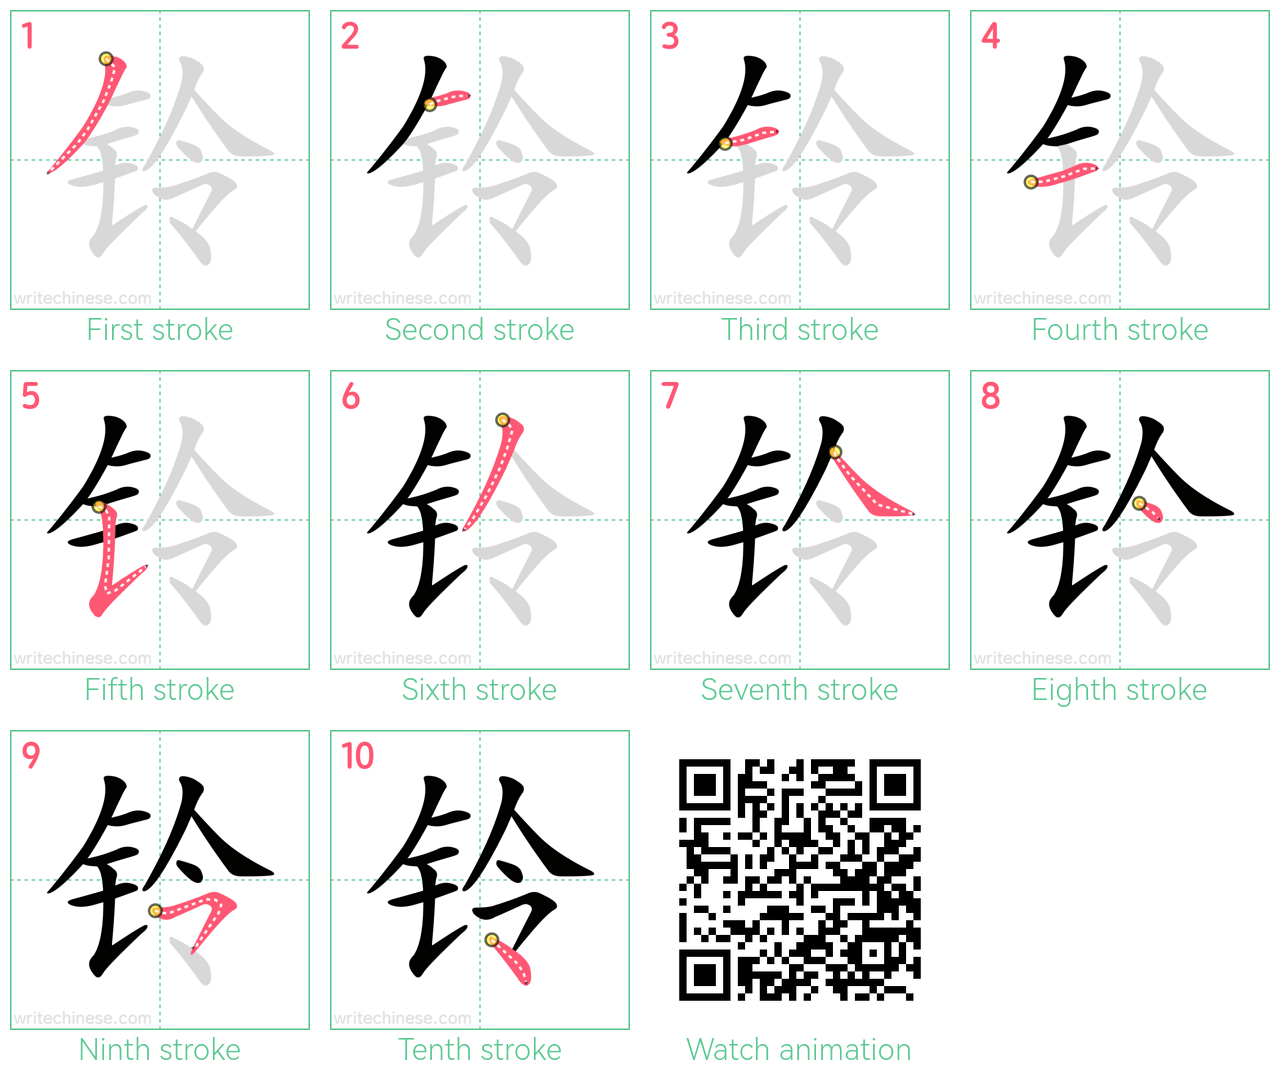 铃 step-by-step stroke order diagrams